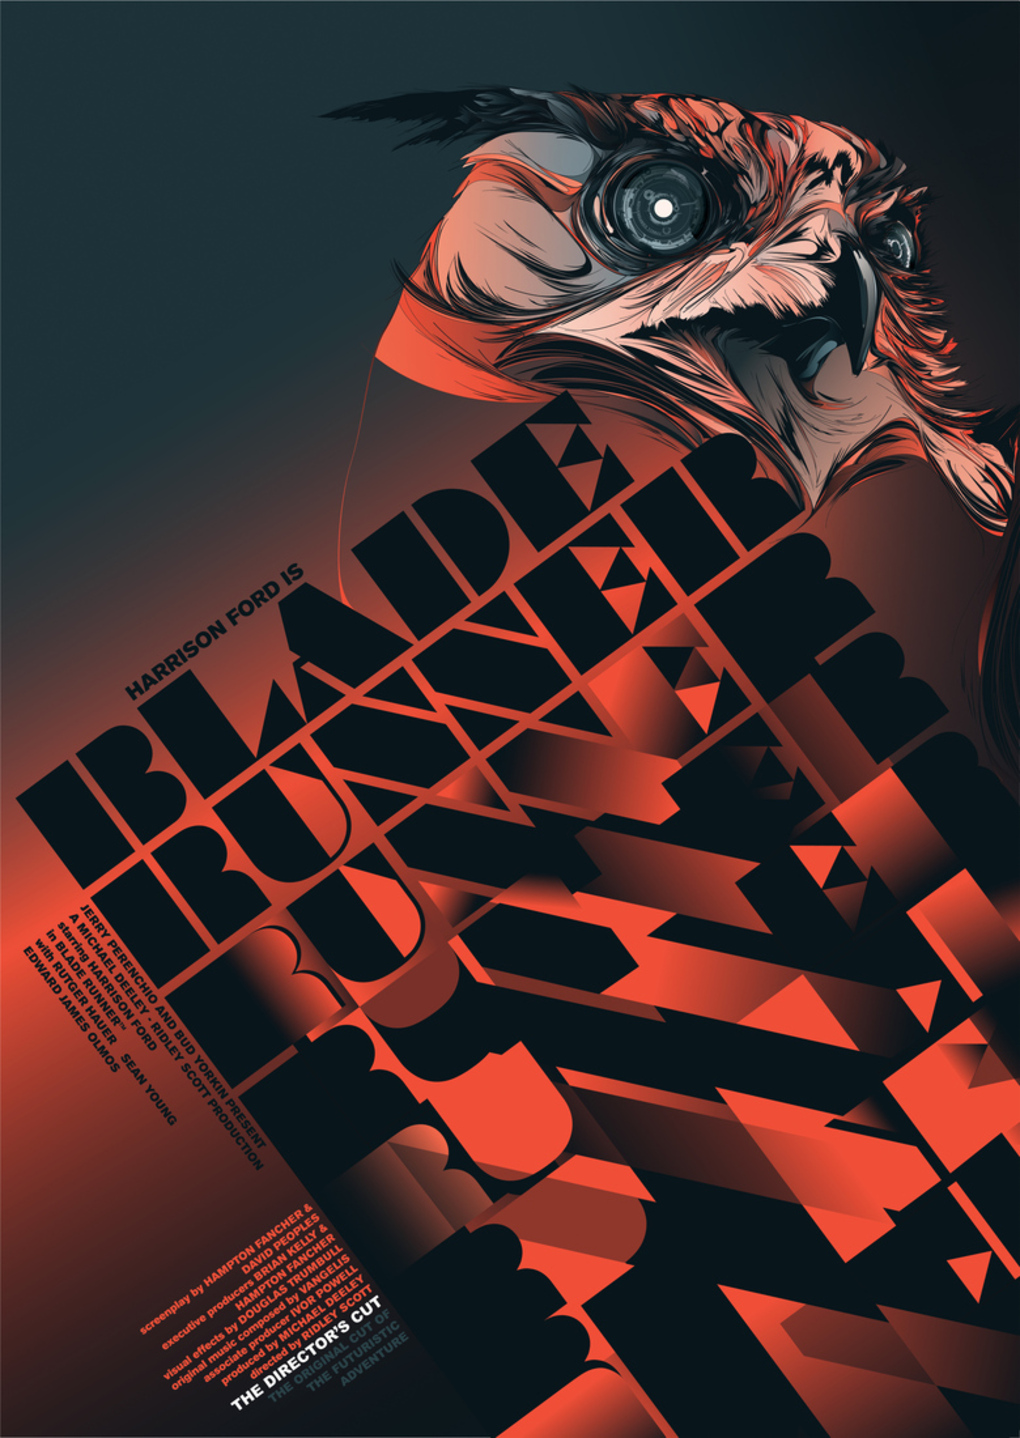 Blade_Runner_-_Kako_and_Carlos_Bela_verge_super_wide